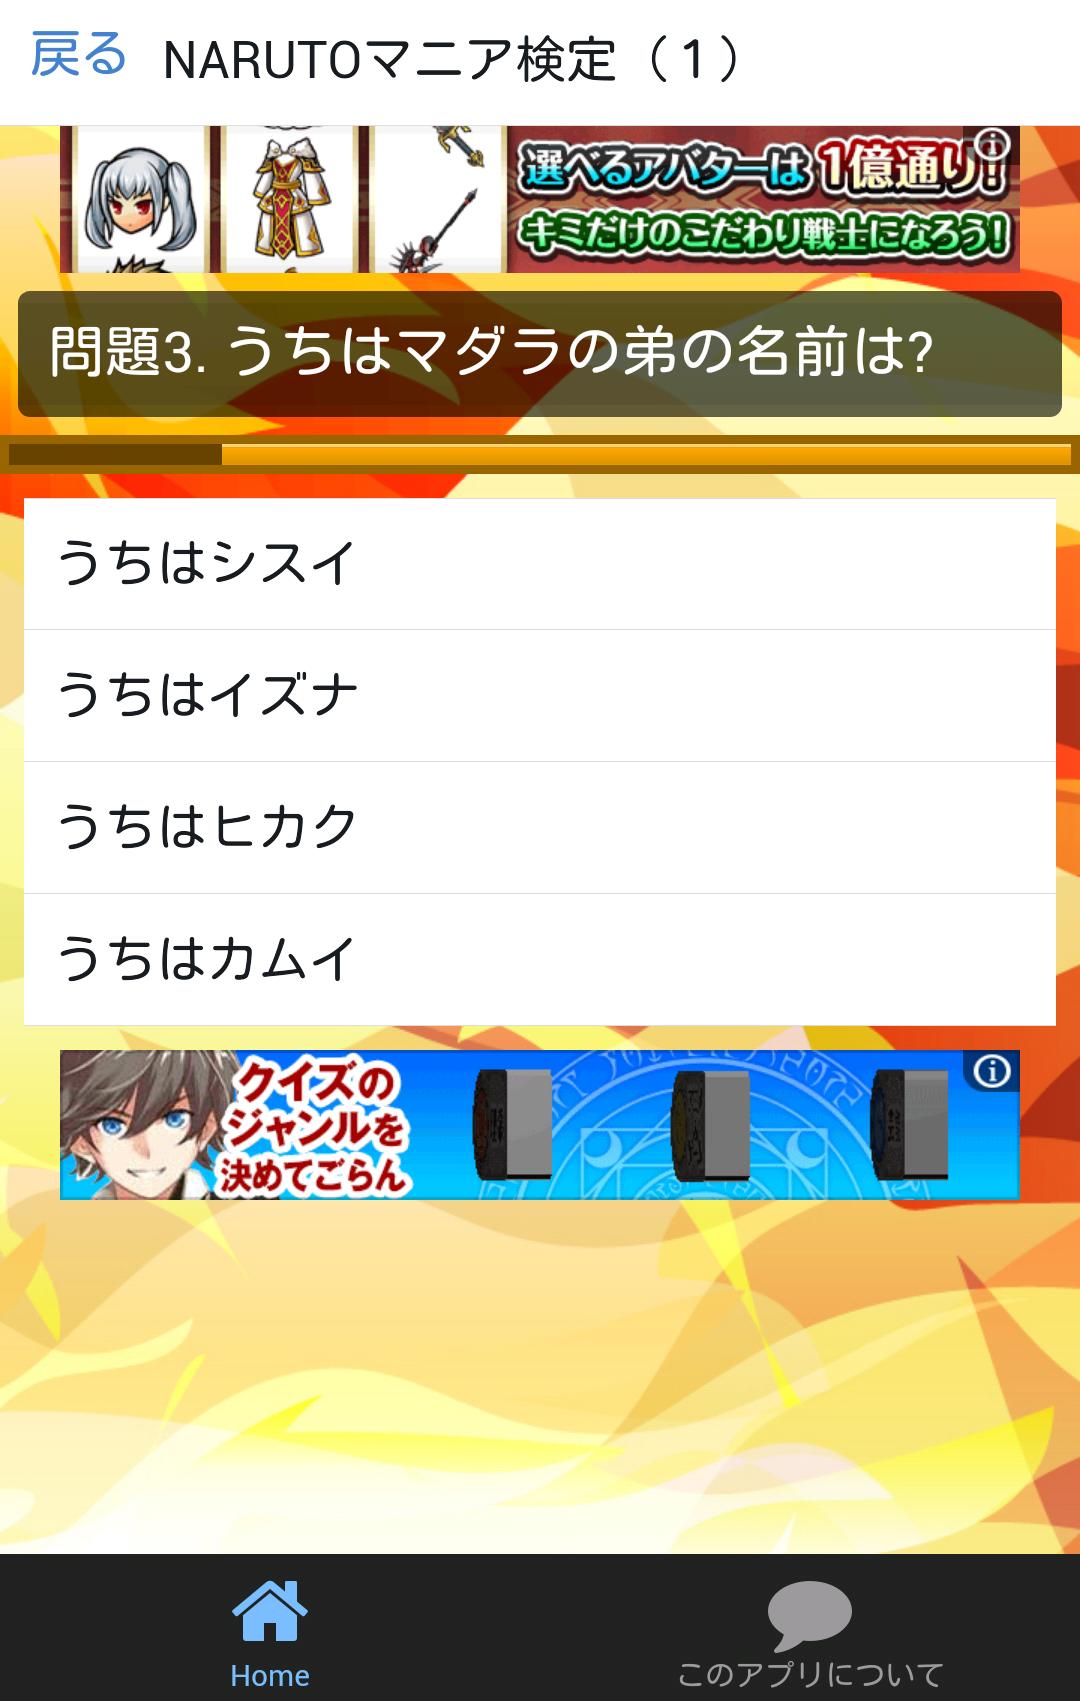 アニメクイズ For Naruto マニアクイズ検定 For Android Apk Download